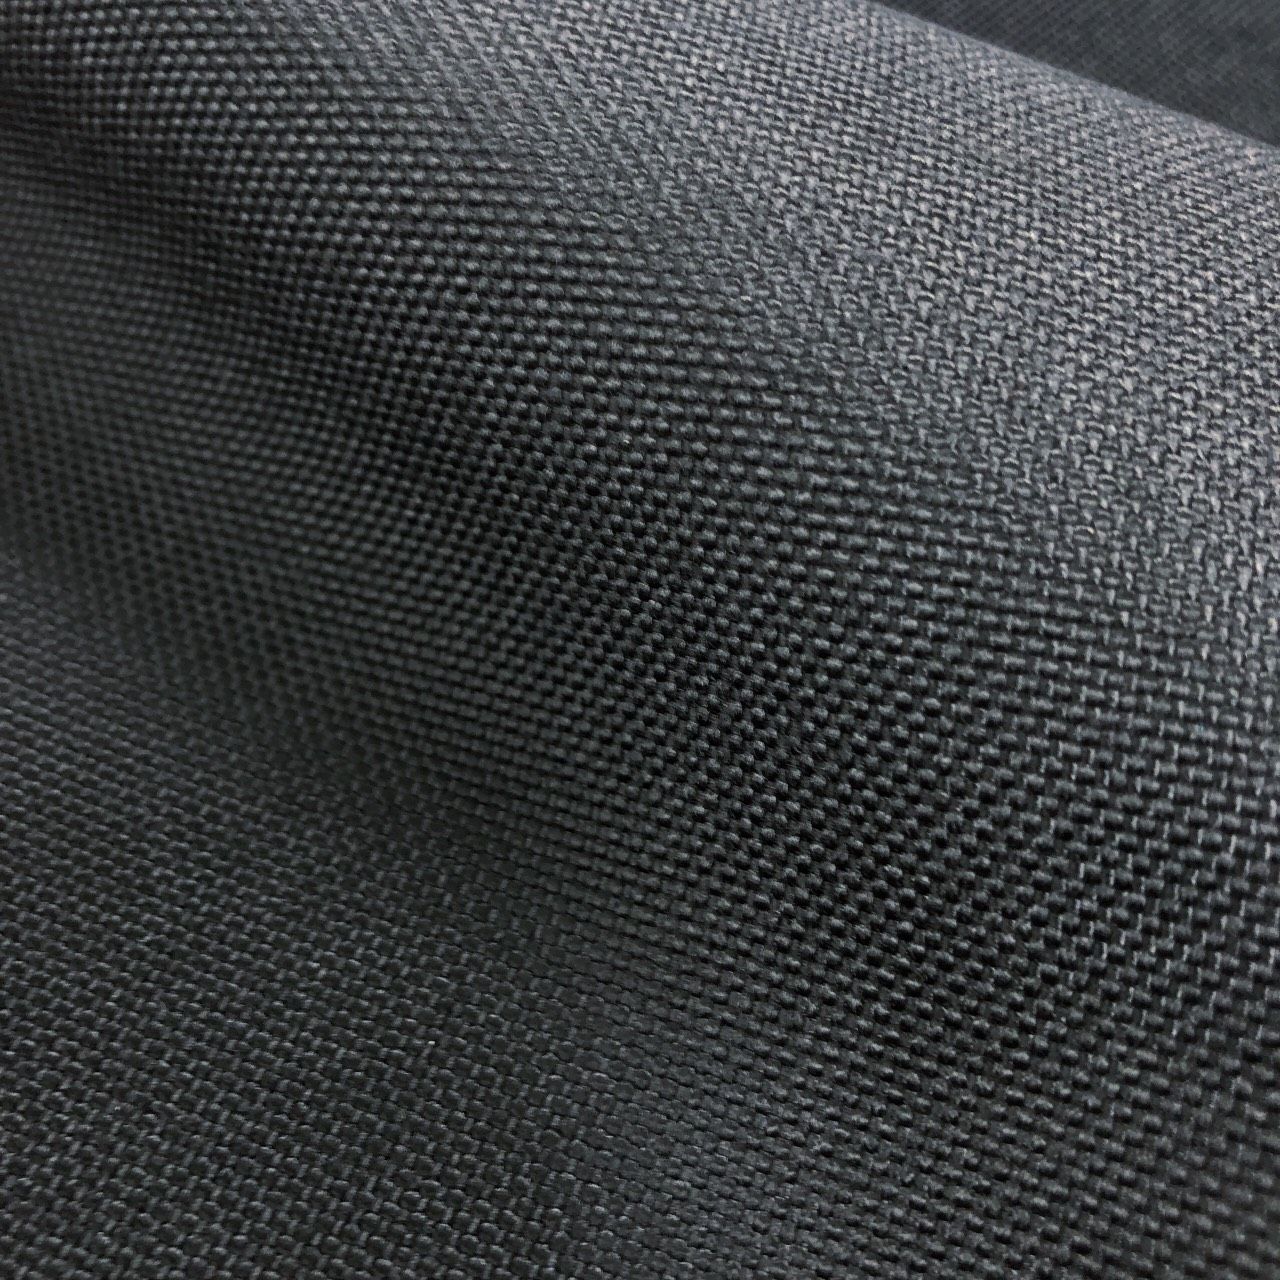 High Tenacity Fabric